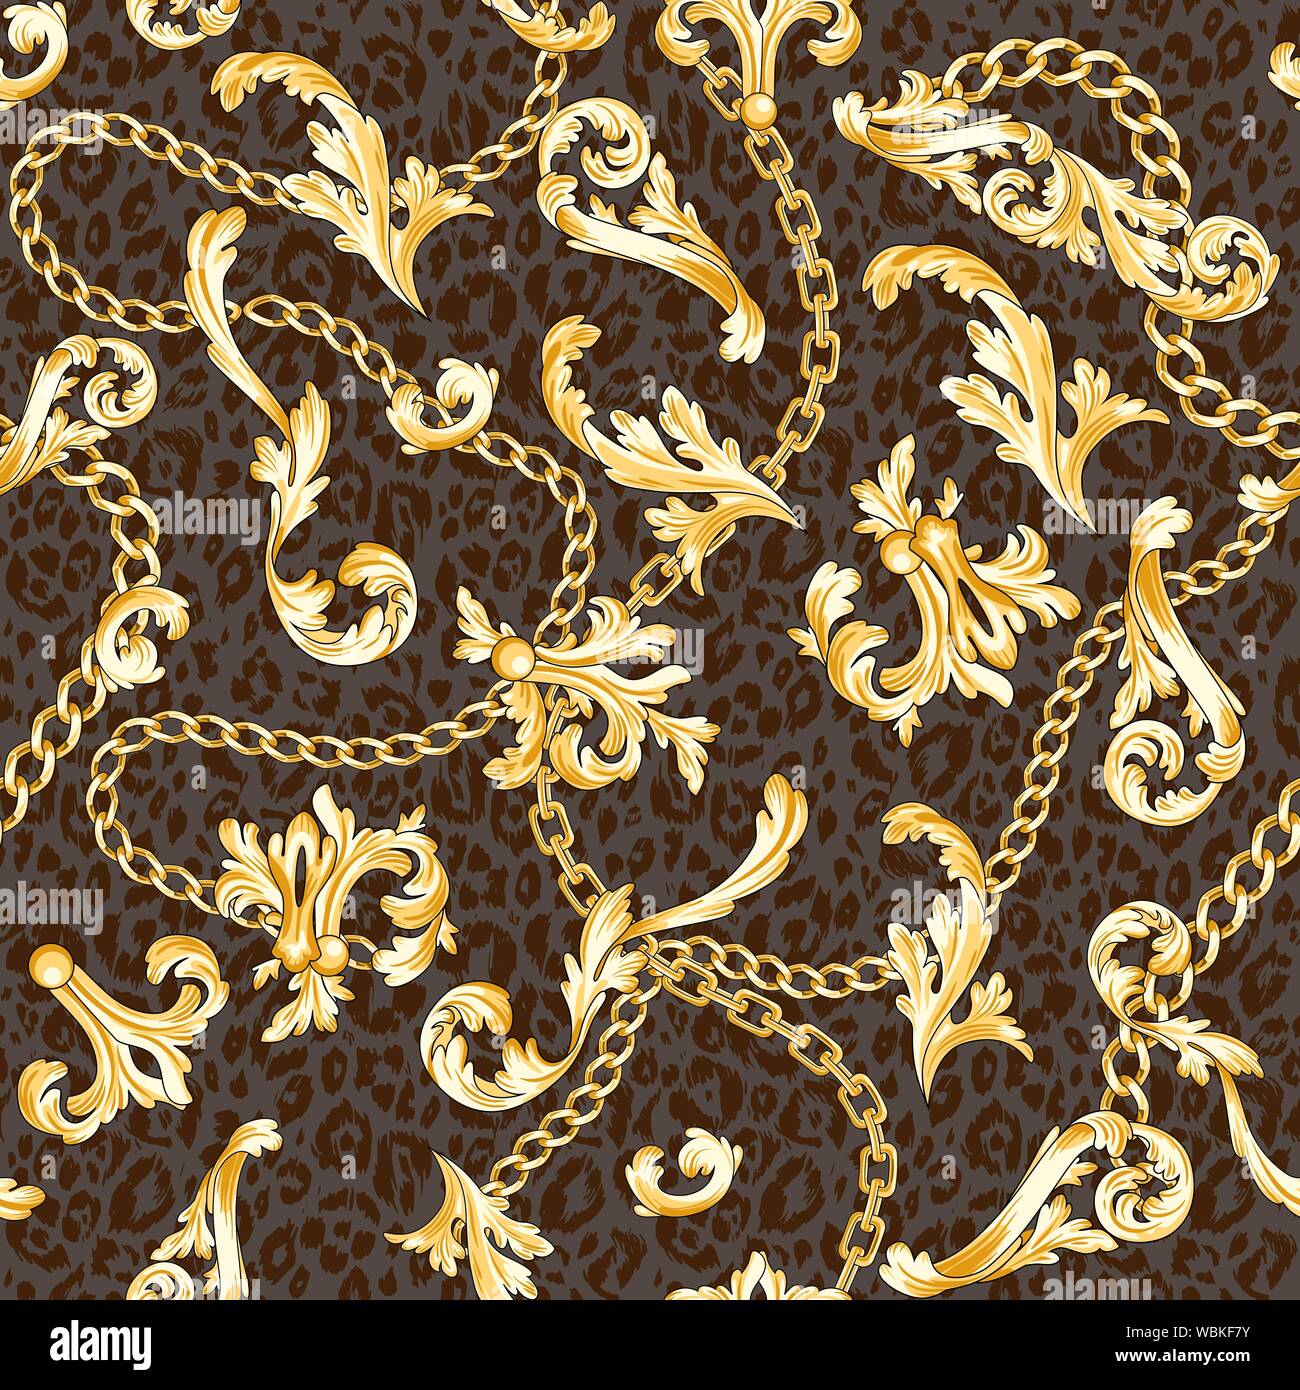 Gold barocke Elemente und Ketten auf Tier Hintergrund gemischt. Trendy nahtlose Muster. Stock Vektor